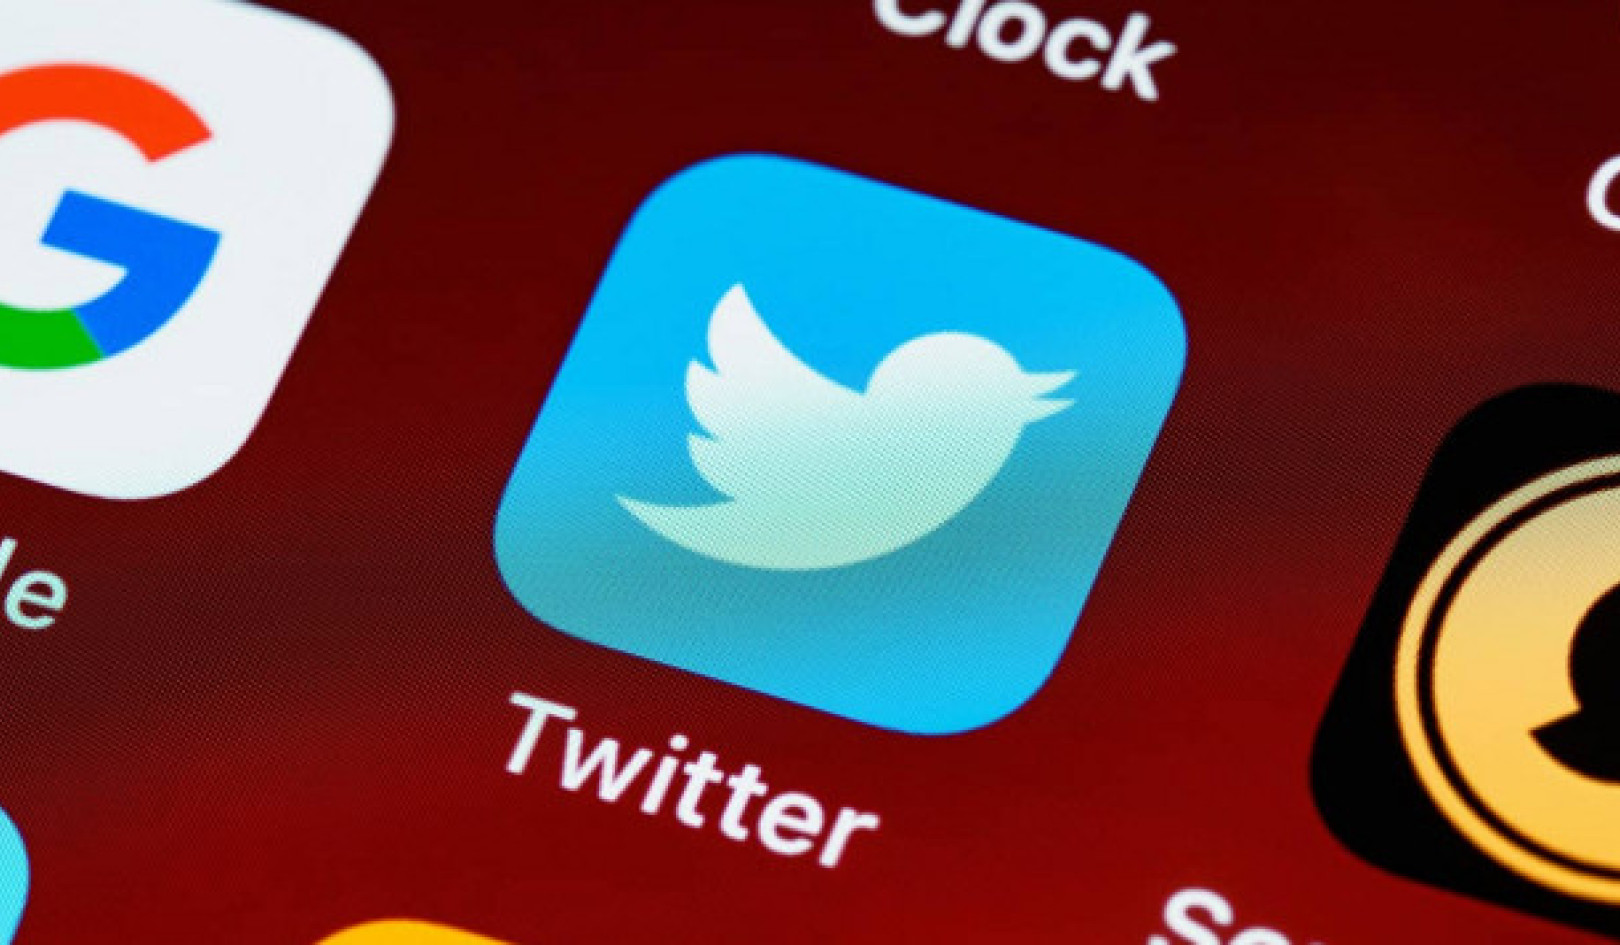 Politieke leiders op Twitter: contrasterende trends in onbetrouwbare inhoud